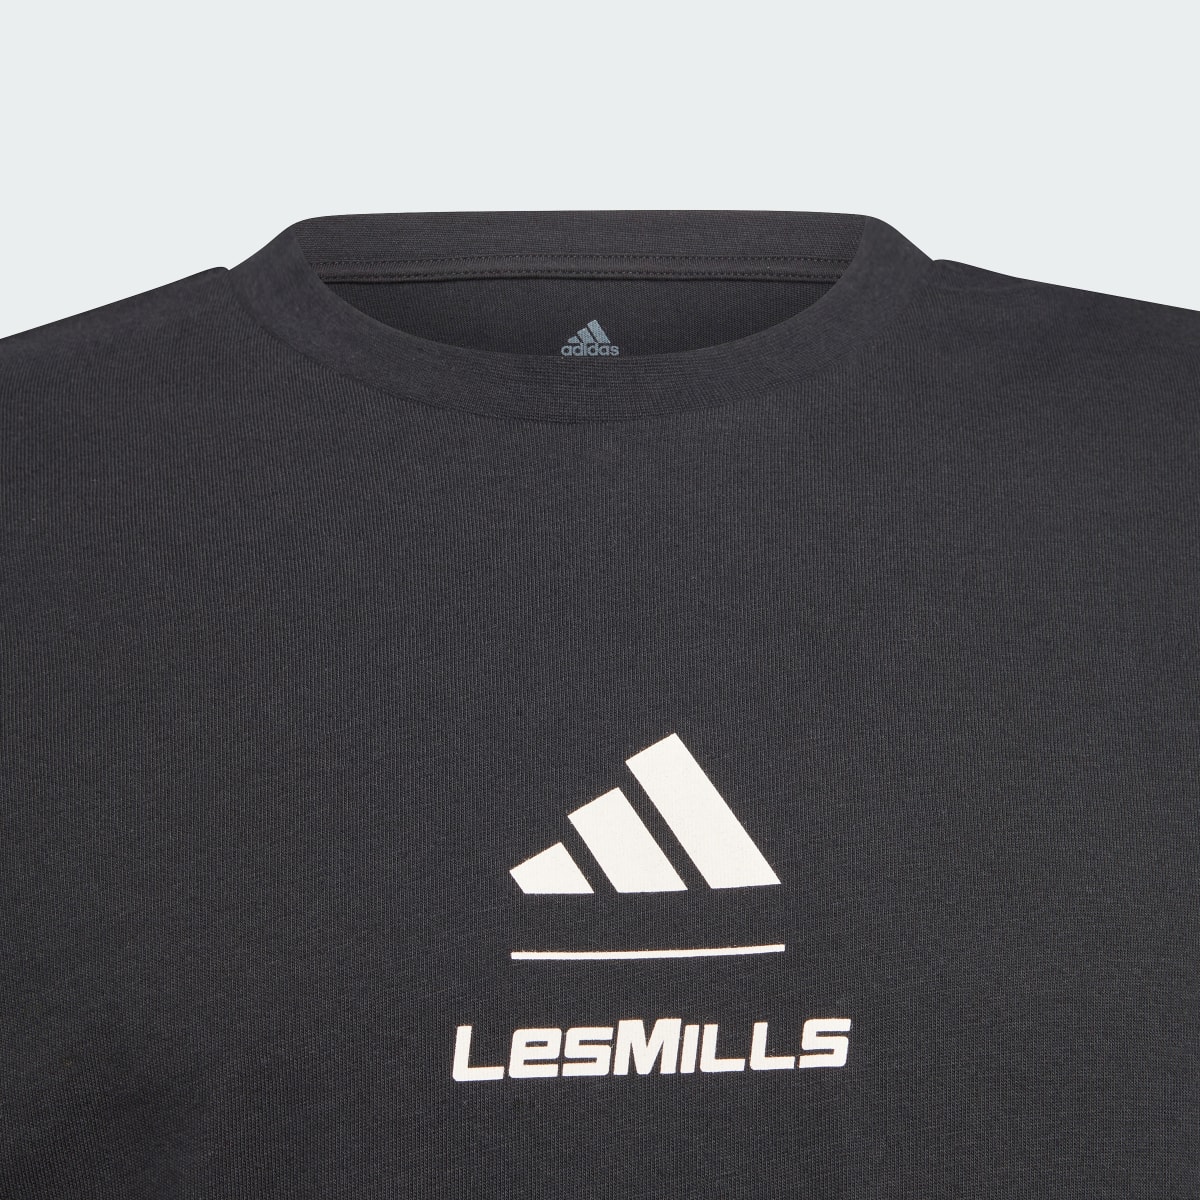 Adidas LesMillsTourTM. 5